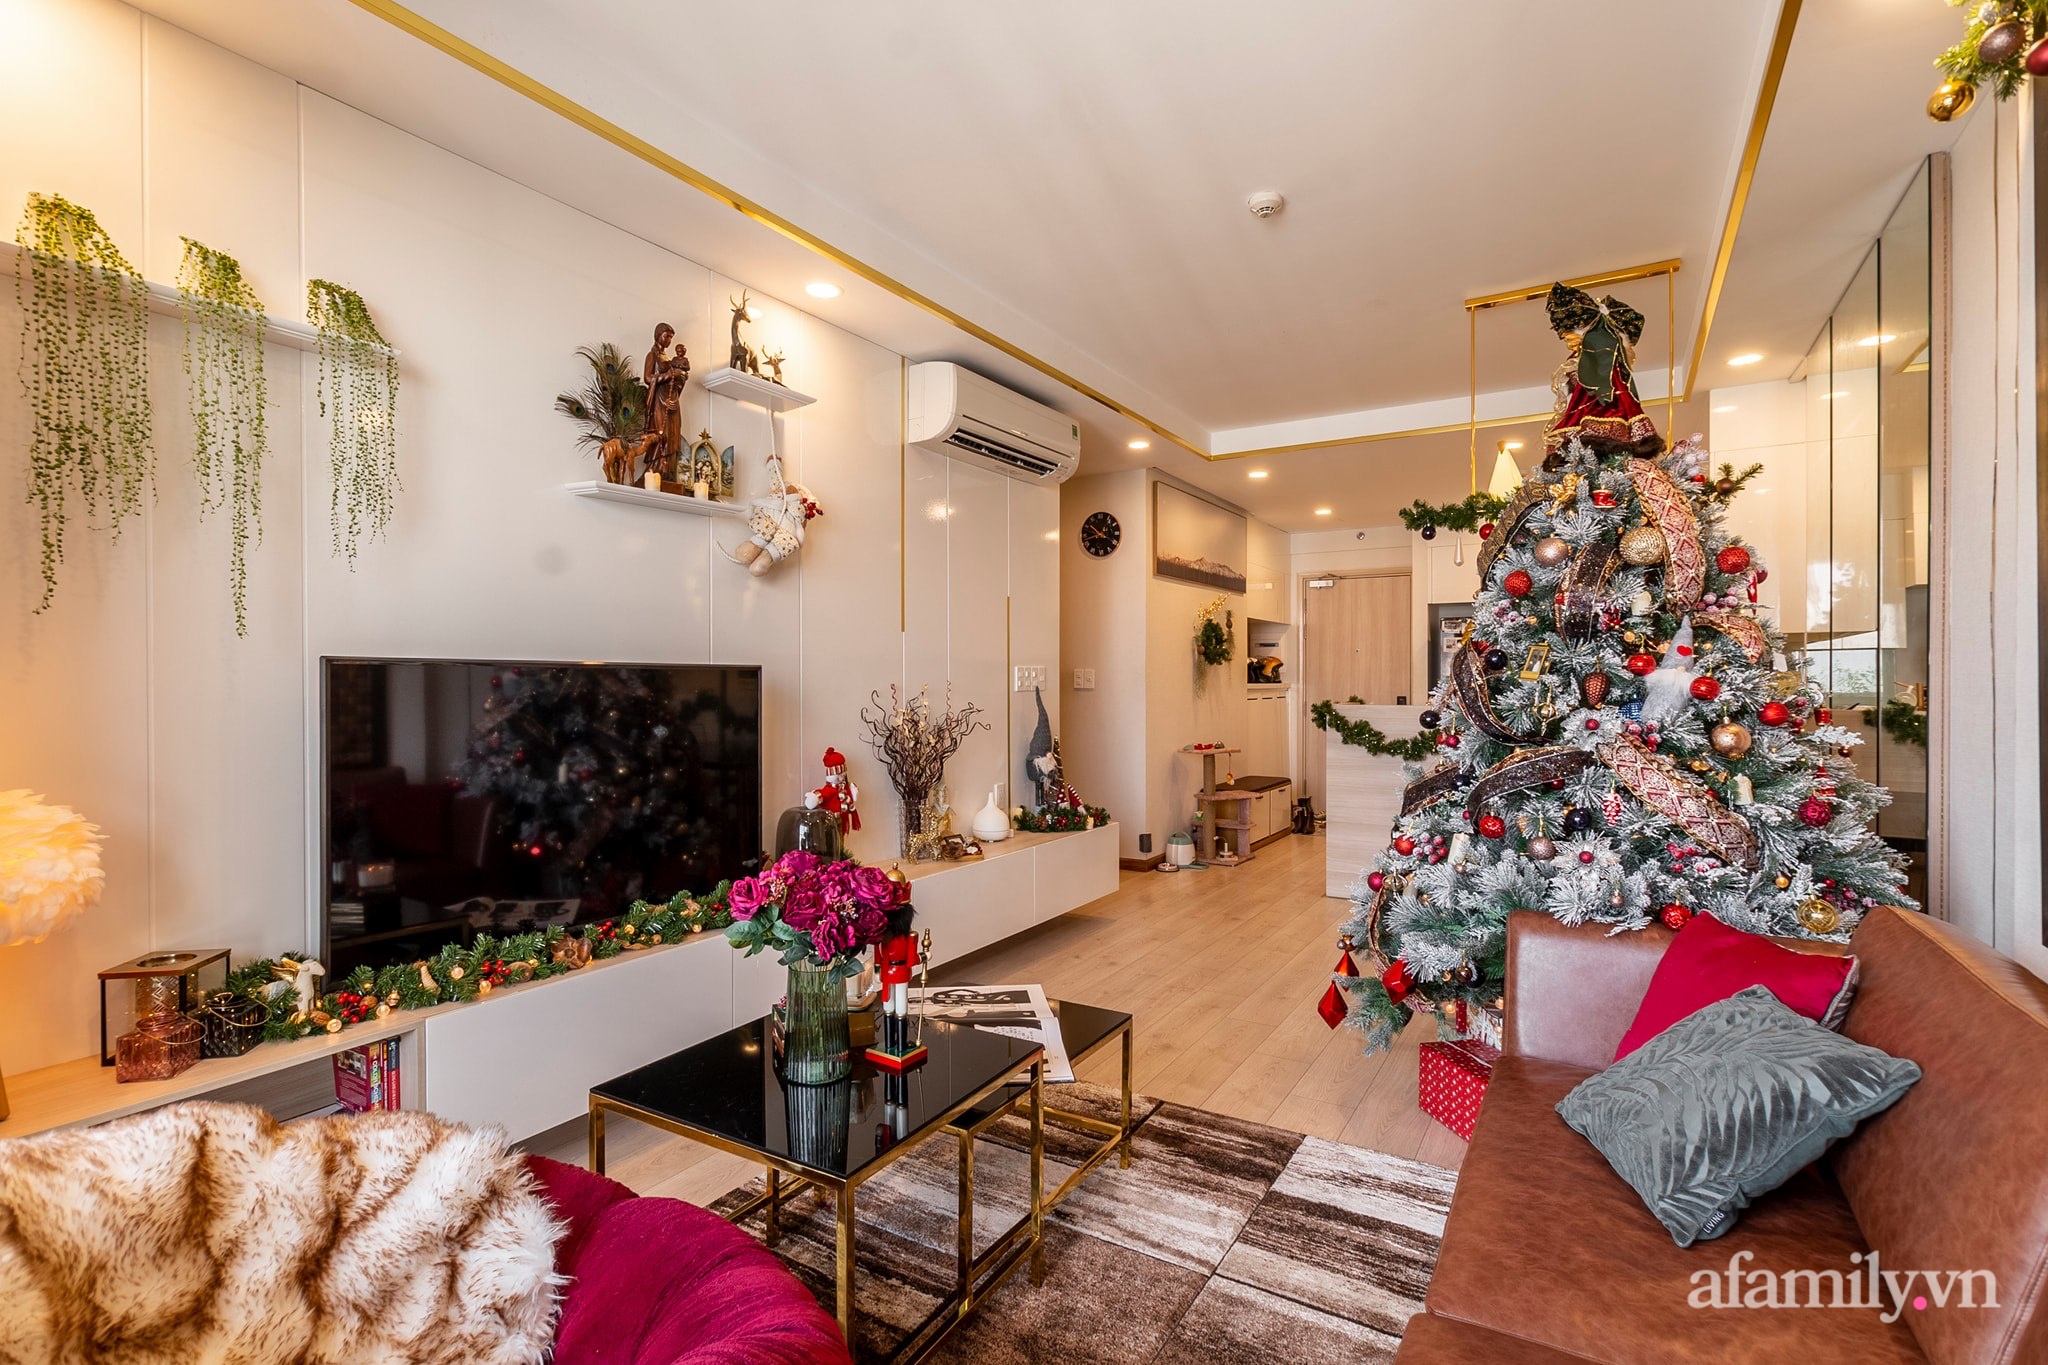 Chi 50 triệu đồng mua đồ trang trí, căn hộ Sài Gòn đẹp lịm tim đón Giáng sinh đang về - Ảnh 19.